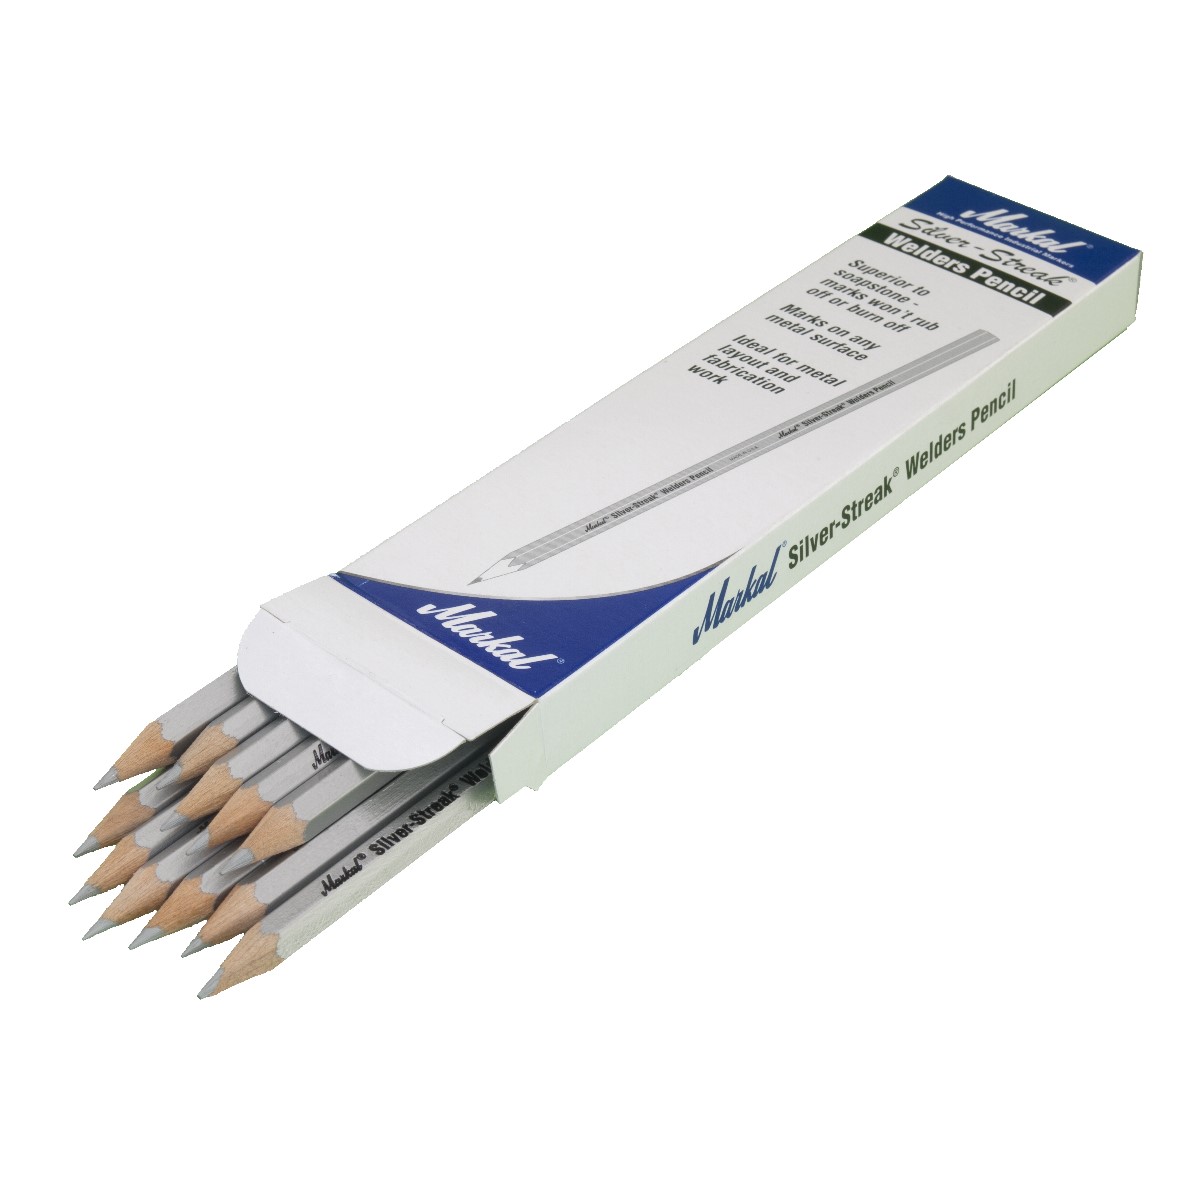 Markal Welder's Pencils